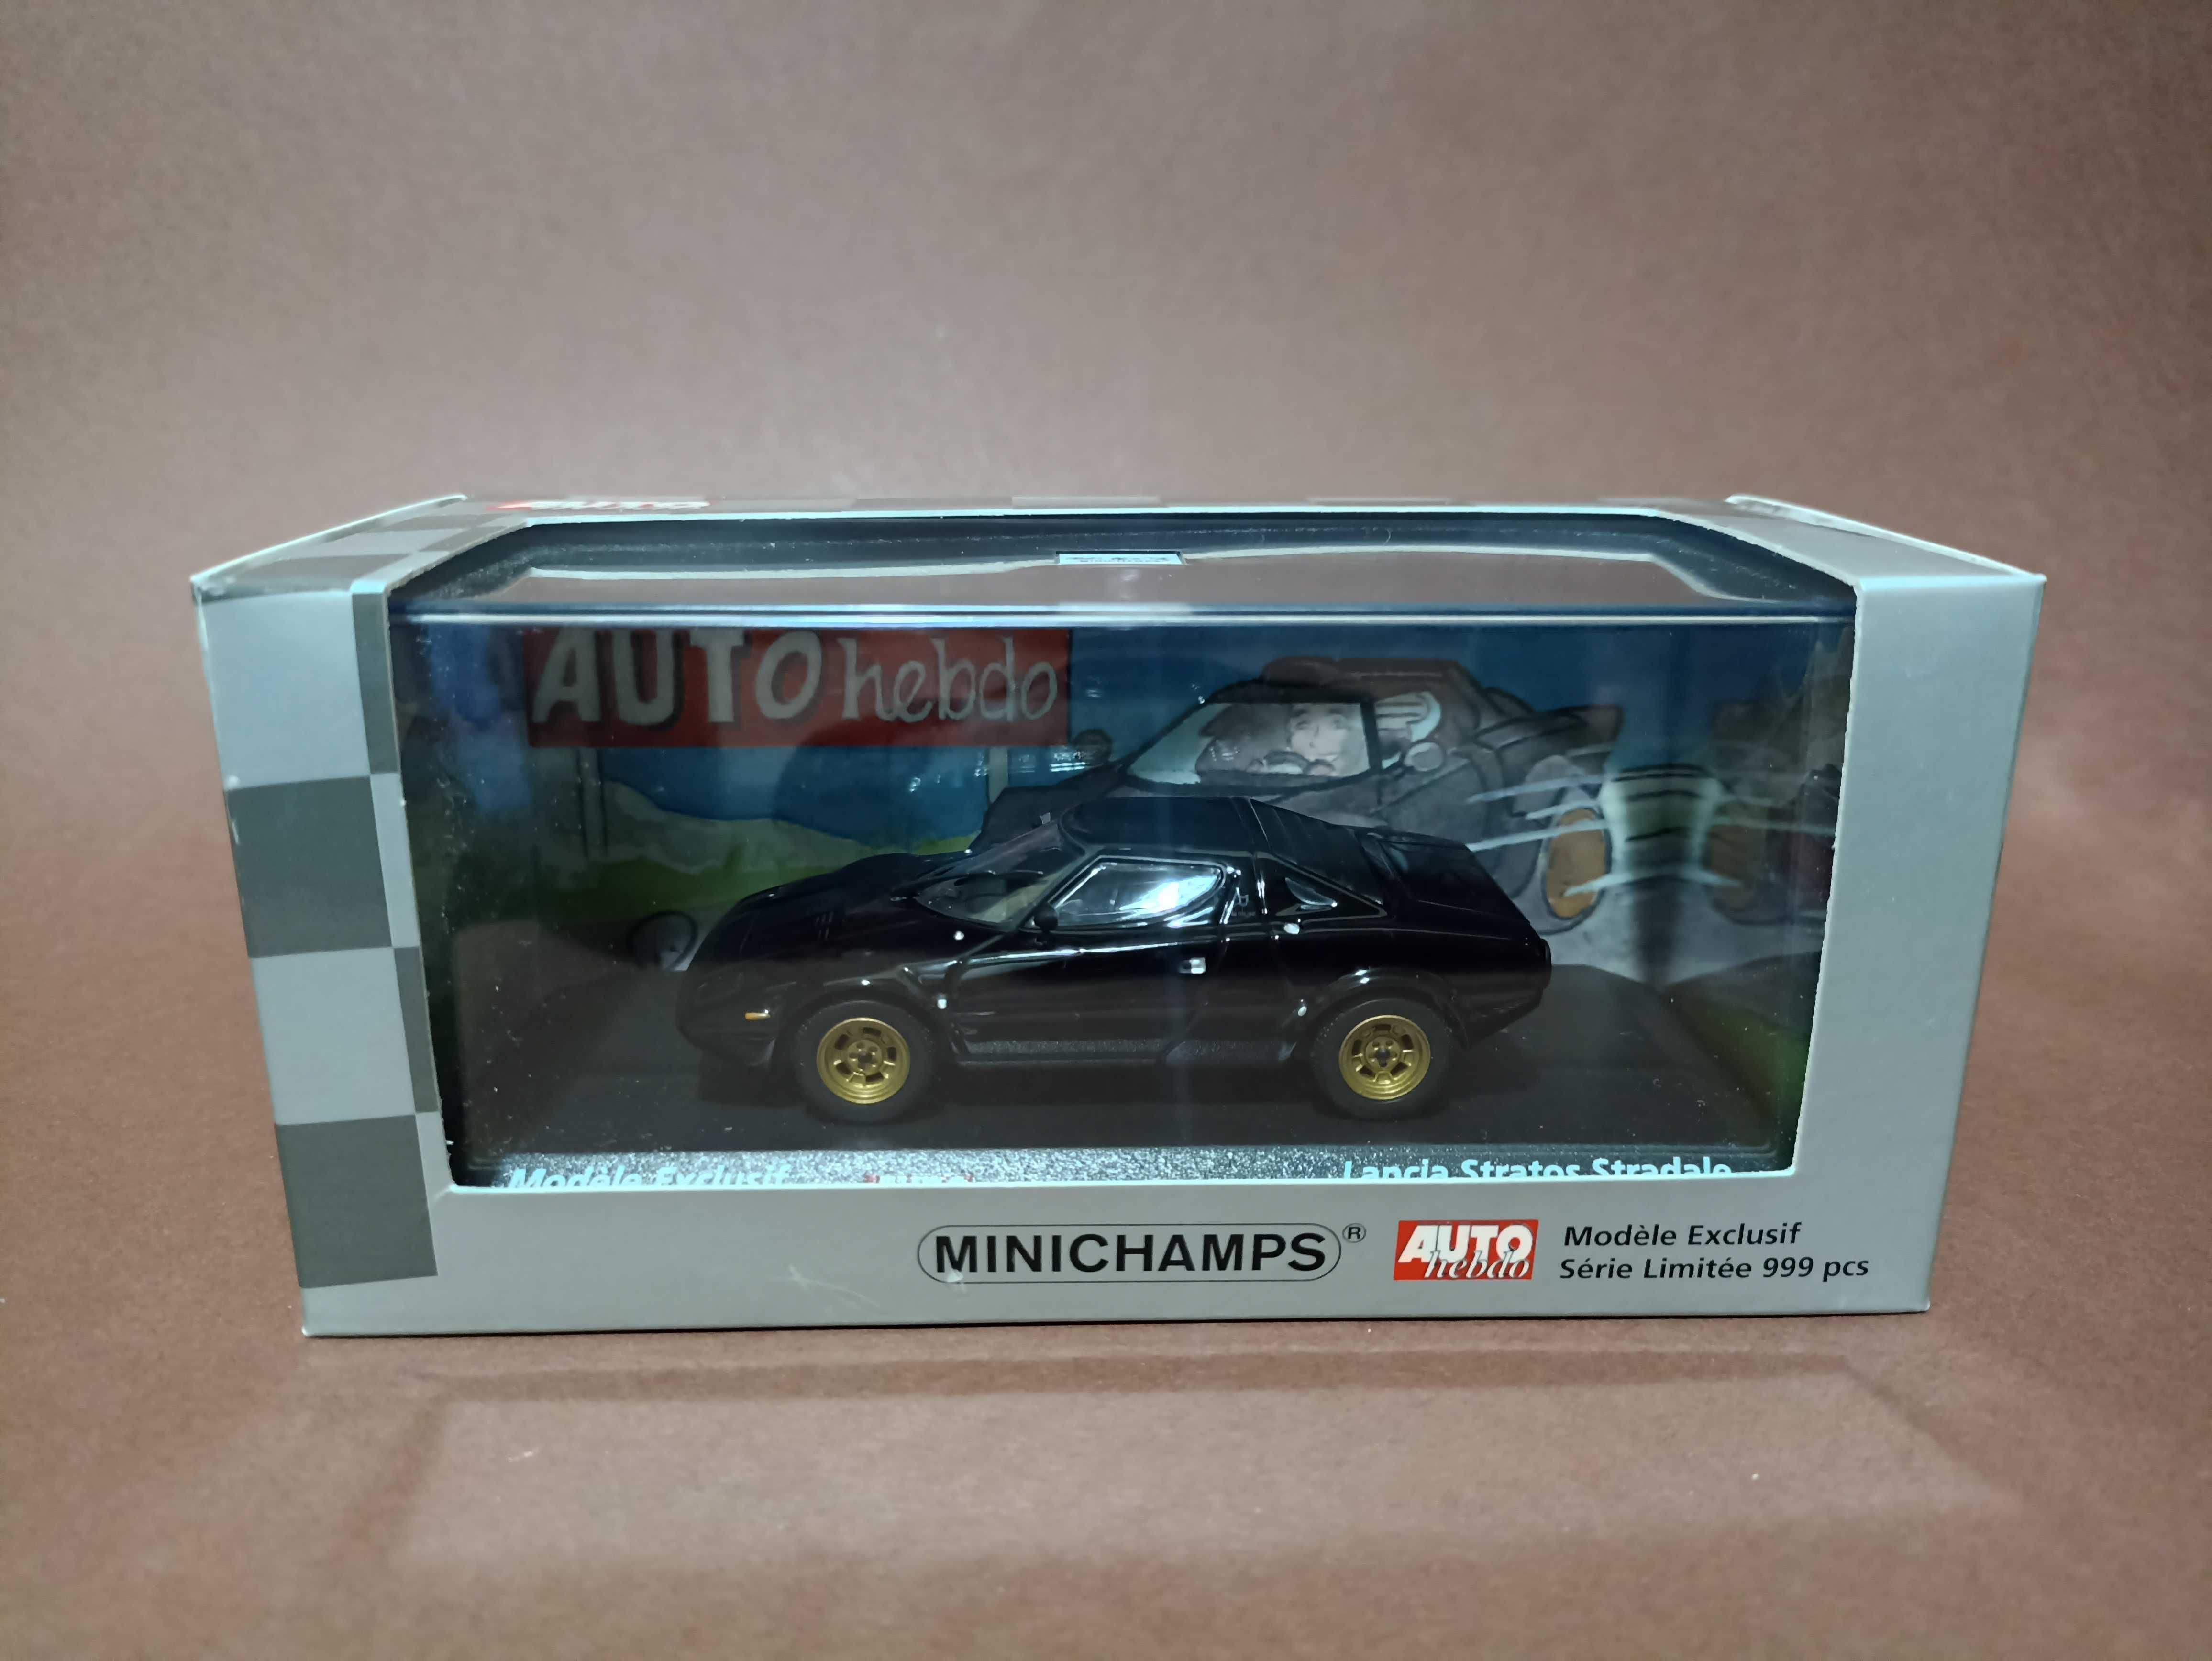 Macheta Minichamps 1:43, Lancia Stratos